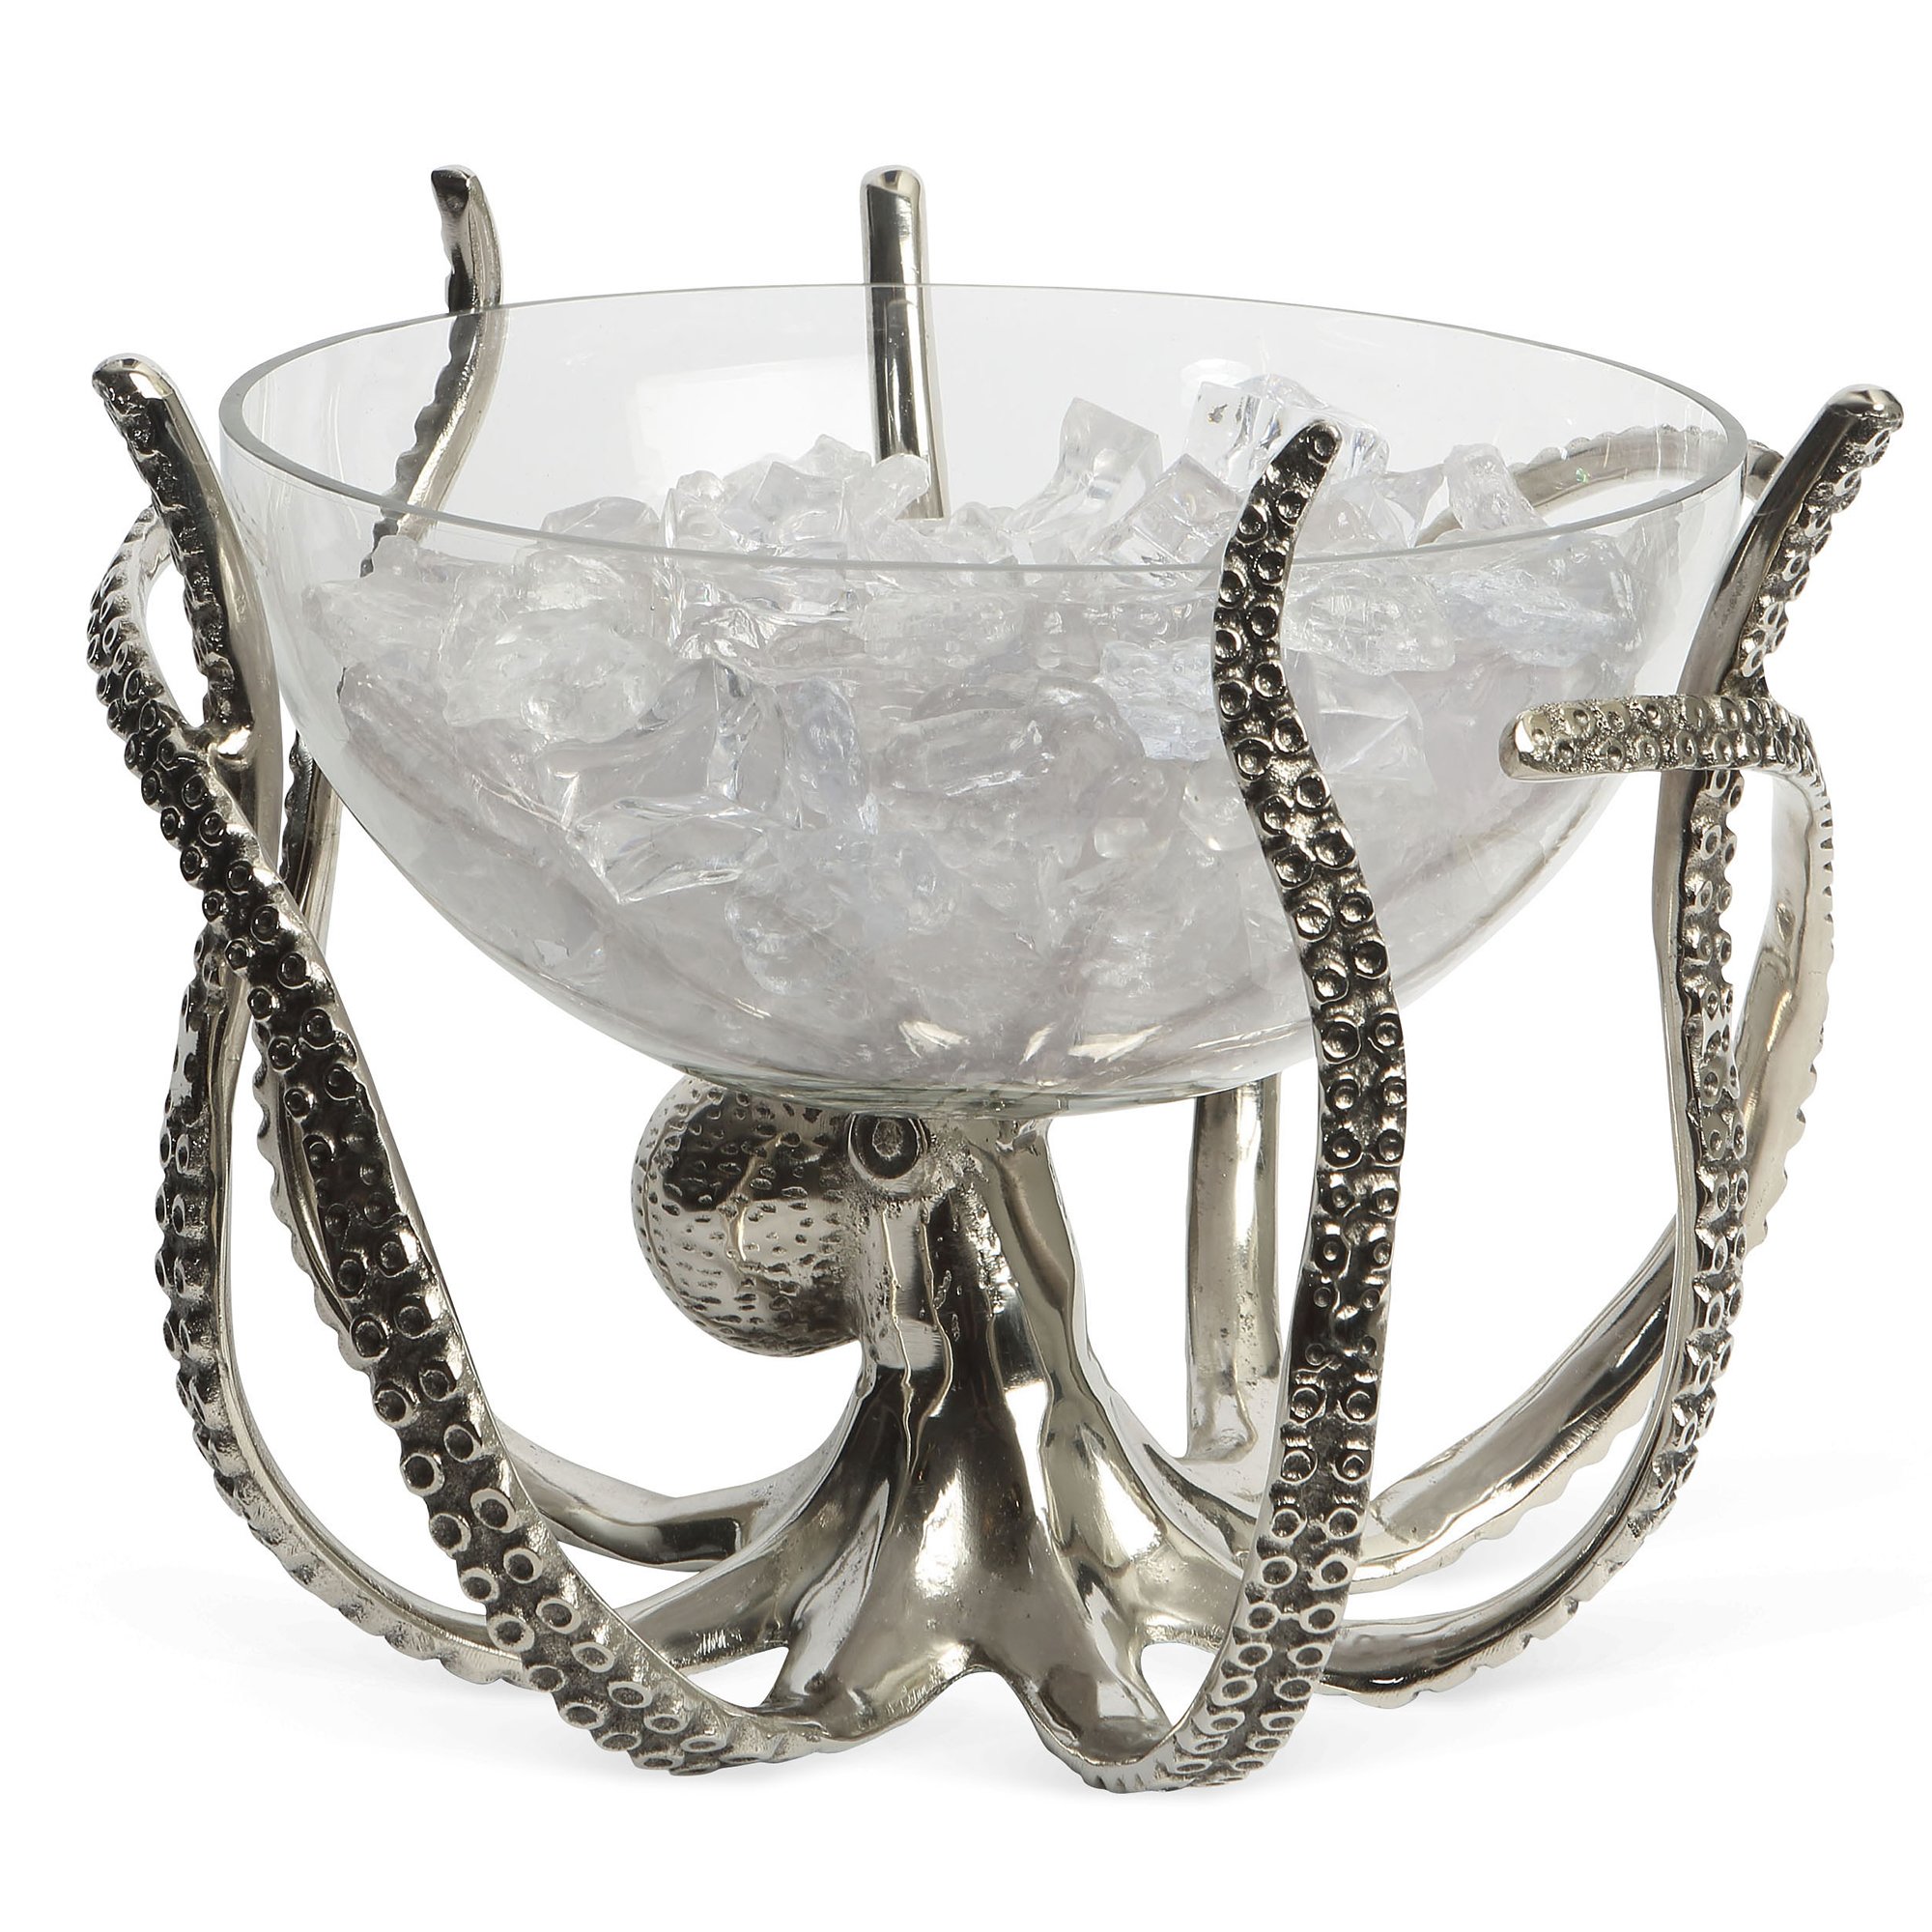 Culinary Concepts Blækspruttestativ med glasbowle